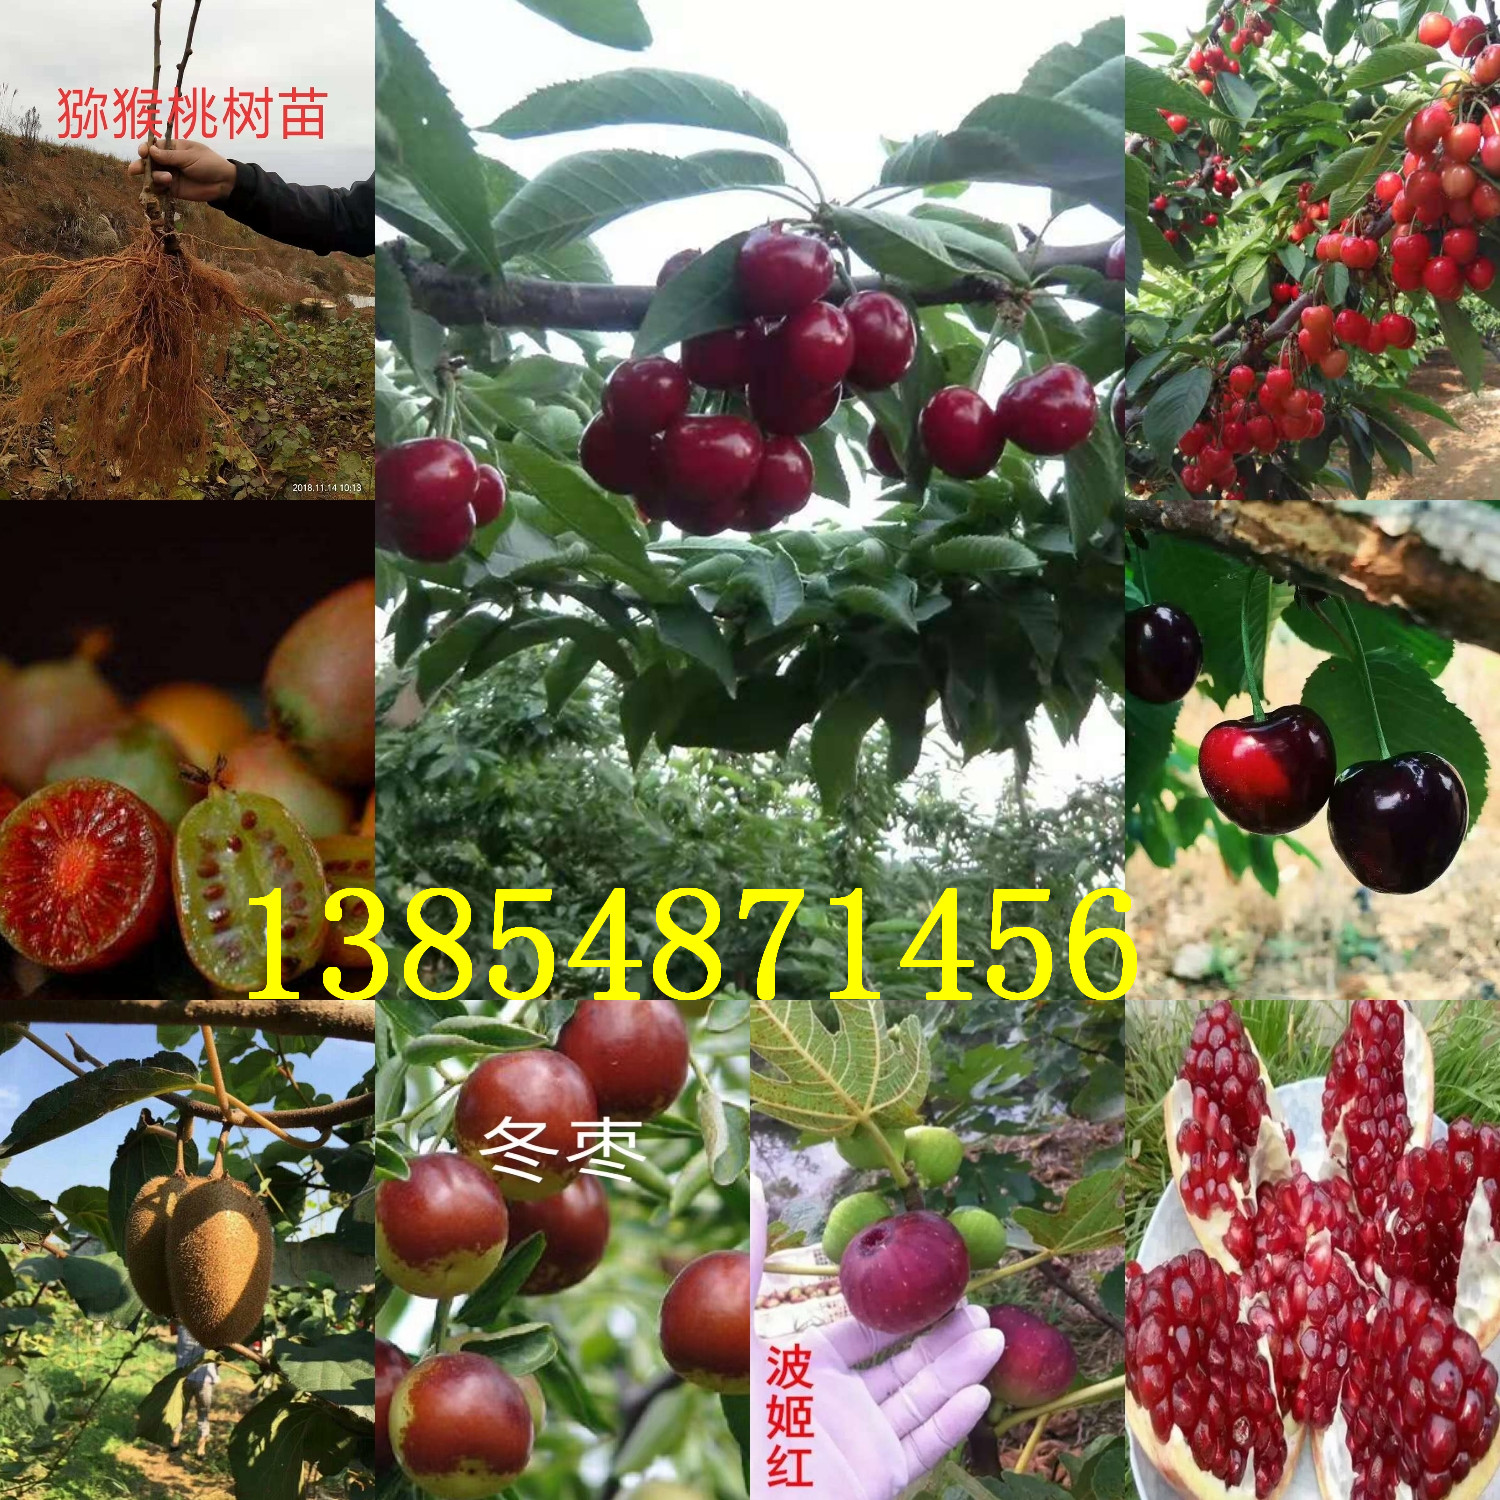 湖北鄂州妙香草莓苗主产区价格